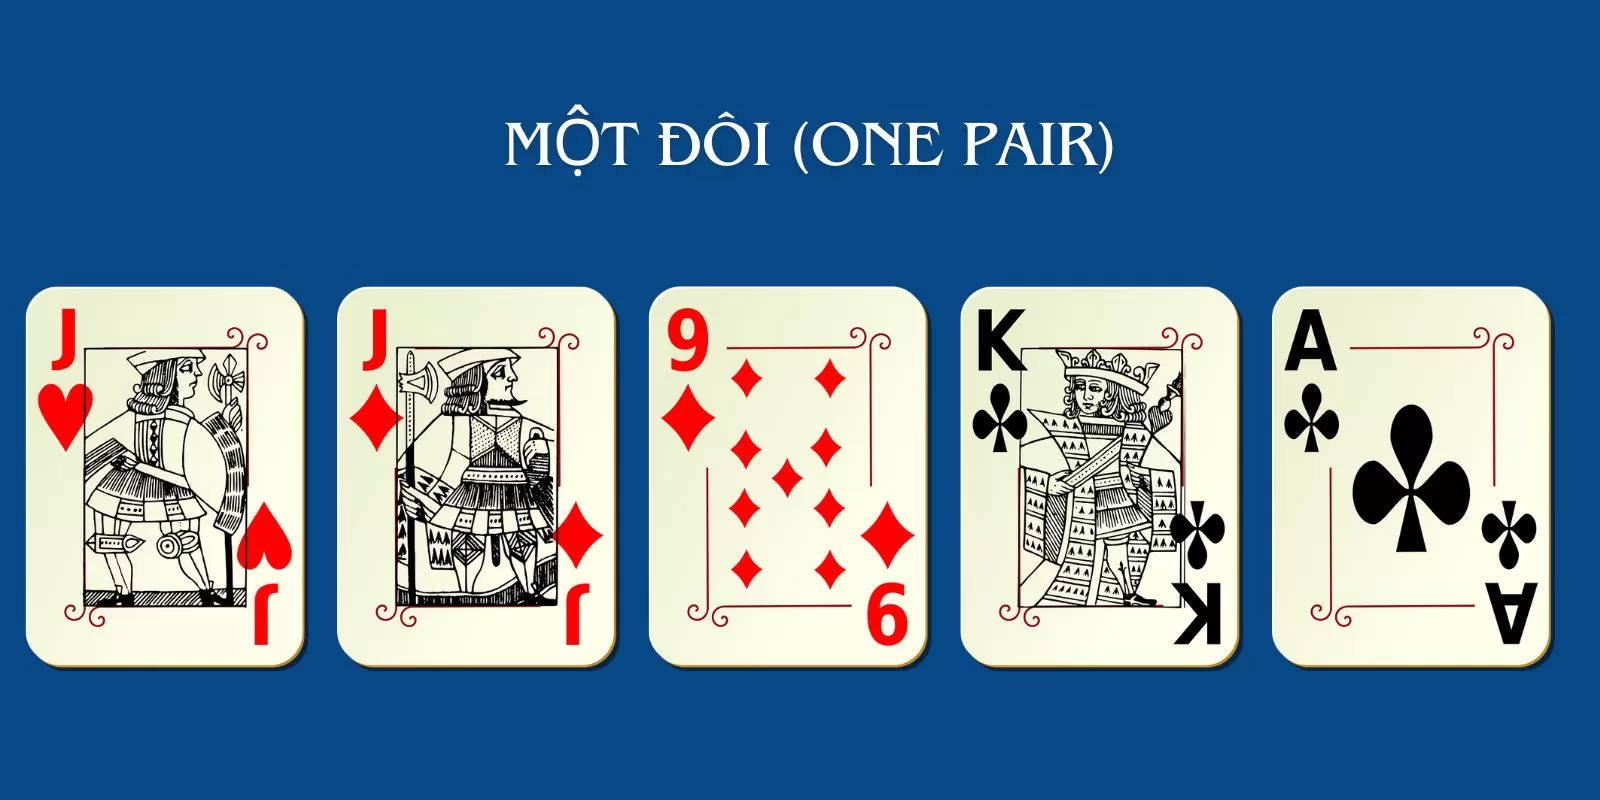 Một đôi gồm 2 lá bài cùng giá trị và 3 lá bài bất kỳ